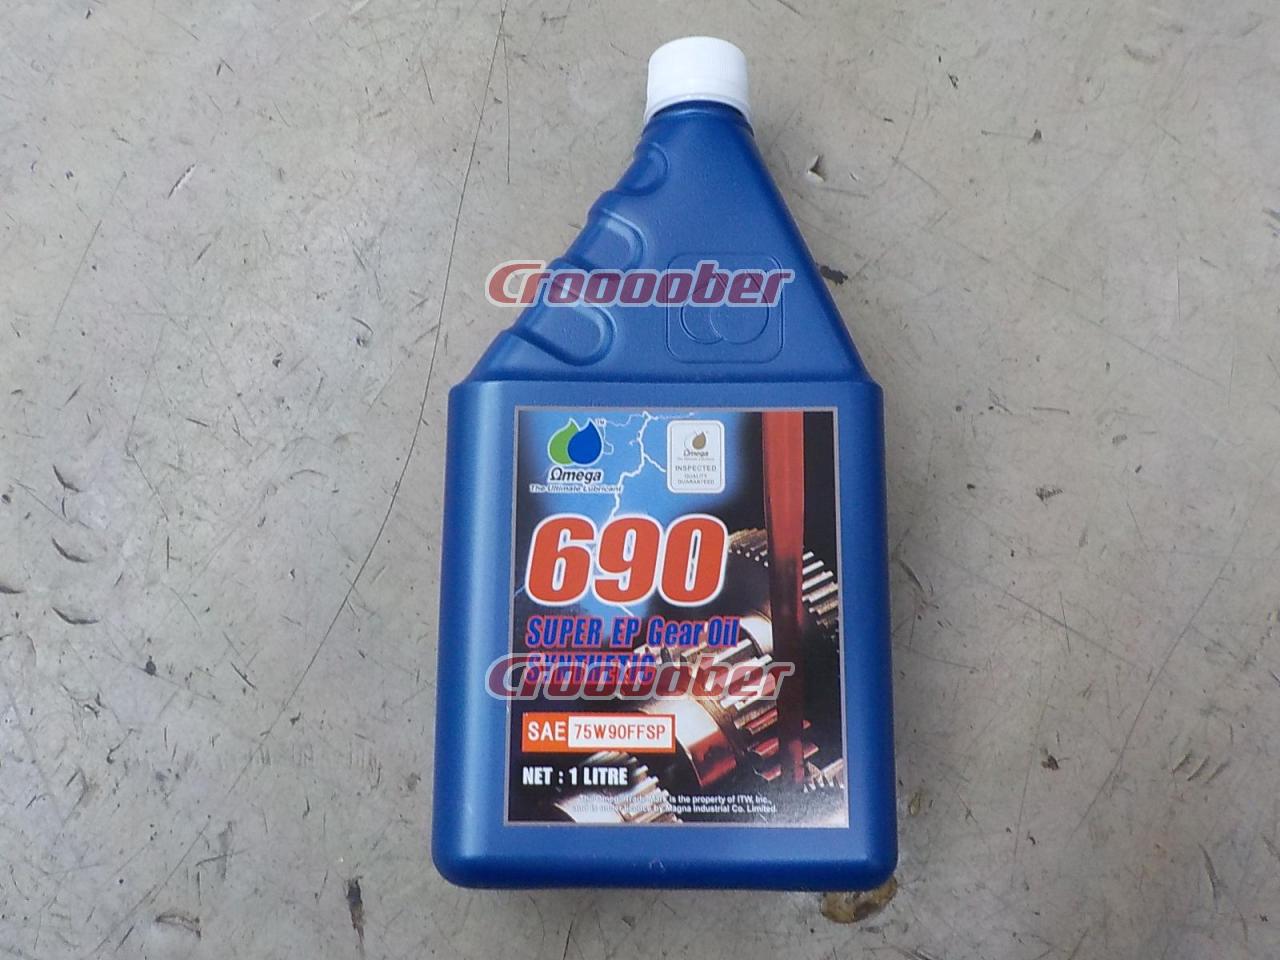 オメガ ギアオイル 690 シリーズ ホワイトラベル VG460 1L 1缶 OMEGA OIL ギヤオイル パラフィン鉱物油